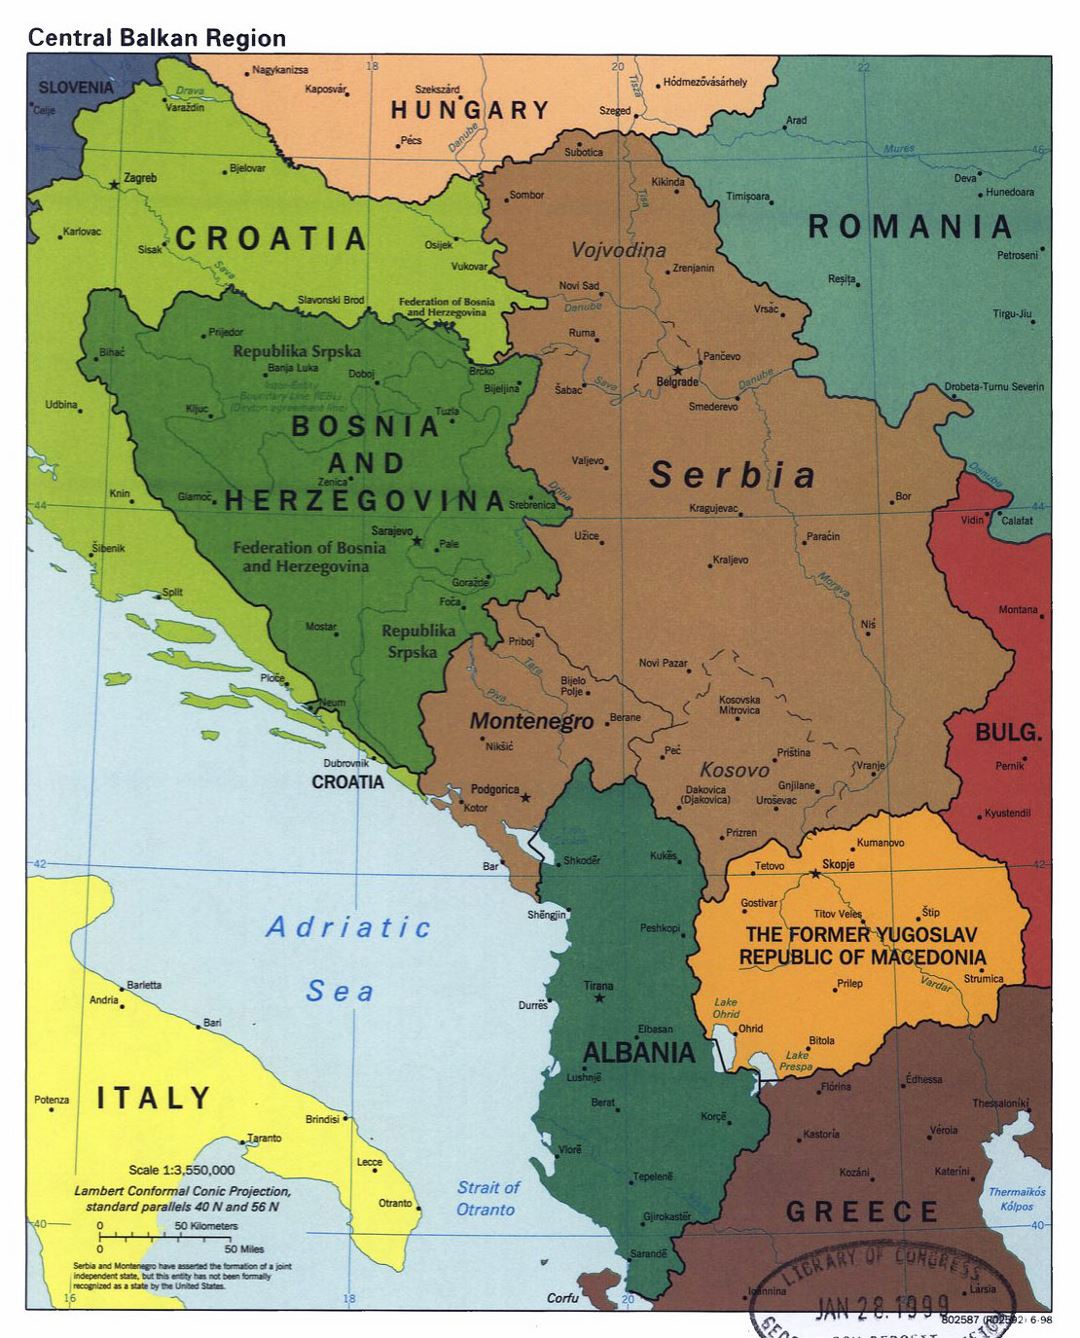 Mapa político detallada de la Región Central de los Balcanes con las principales ciudades - 1998